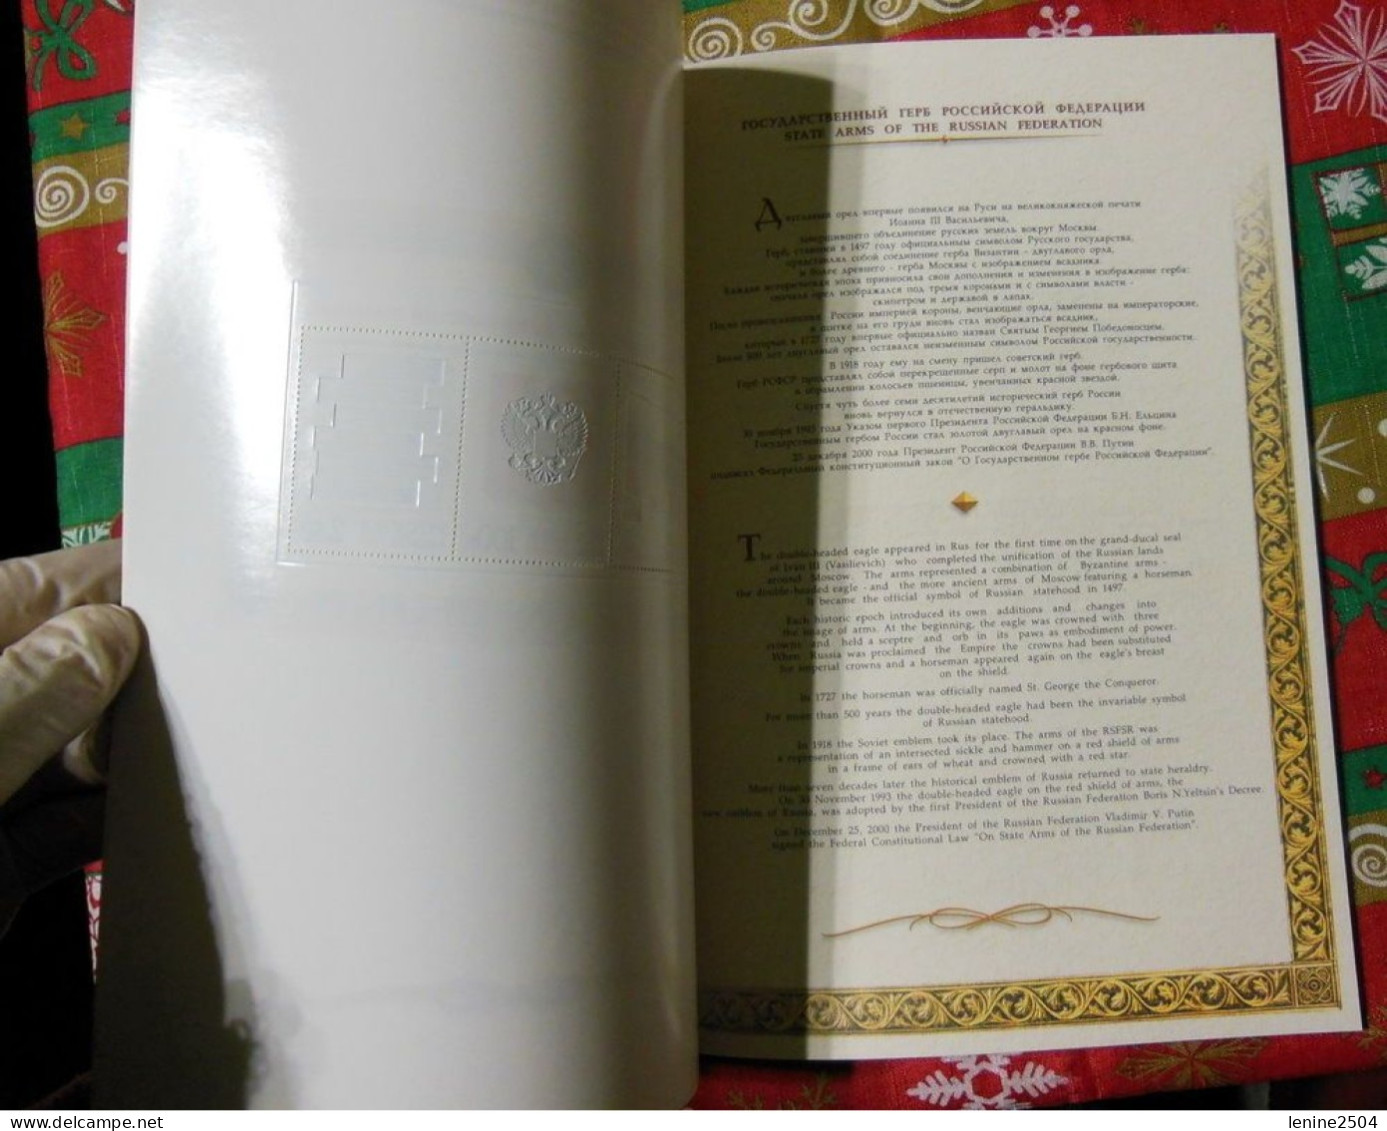 Russie 2001 N° 6570-6573 ** Emblème Fédération Carnet Prestige Folder Booklet Blanc Format A4 Forte Valeur - Unused Stamps